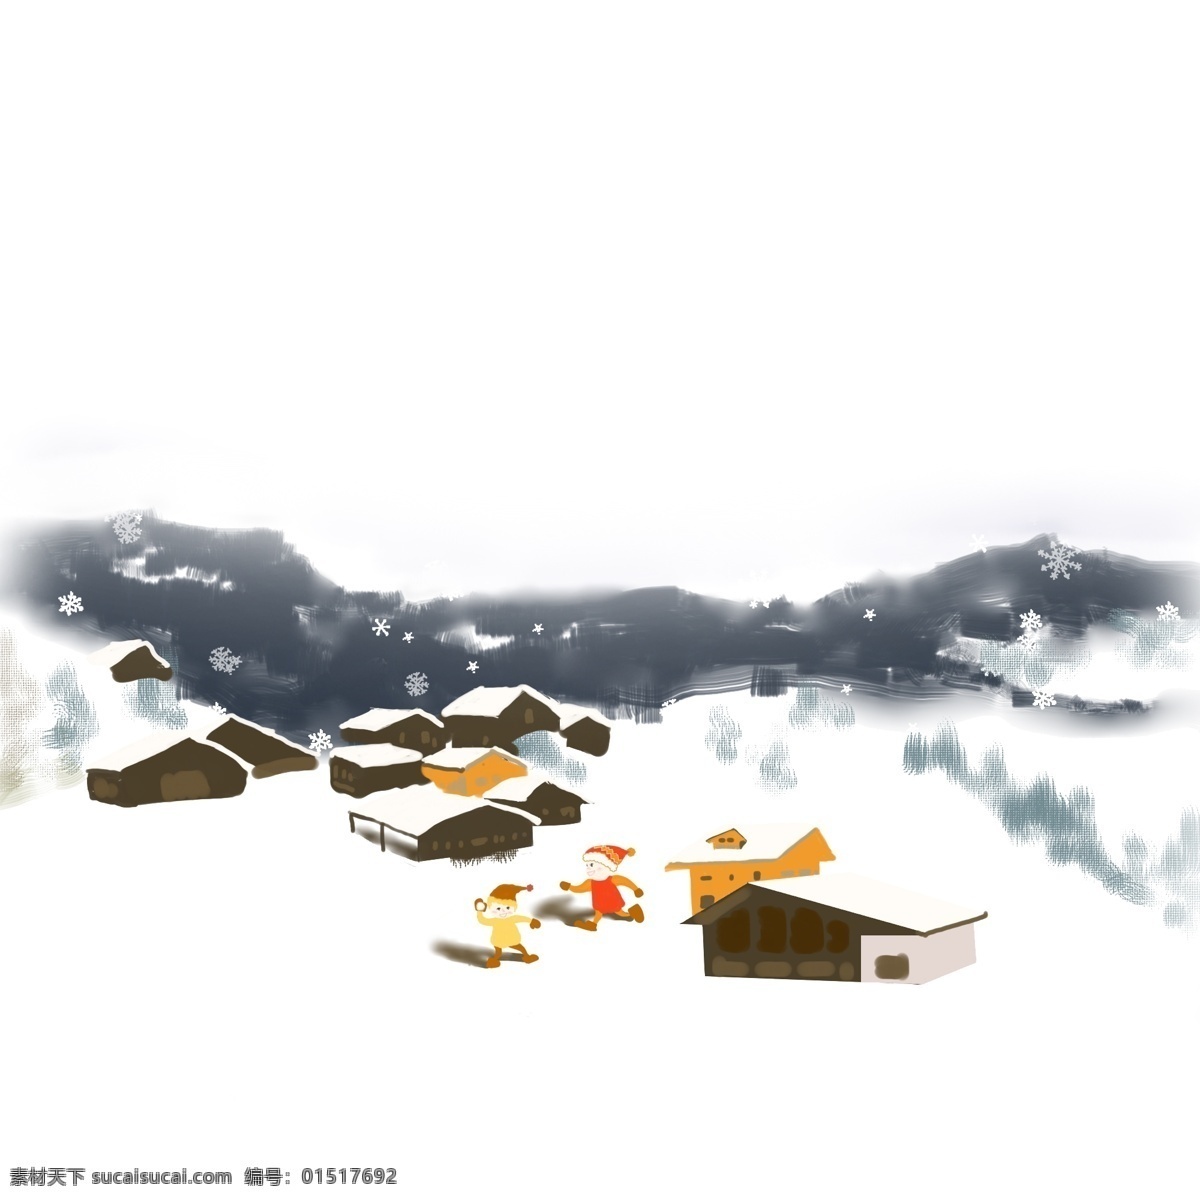 冬季 冷 色系 卡通 手绘 风格 雪景 免 扣 漫天 飞舞 雪花 洁白的地面 鹅毛大雪 森林 温暖的小屋子 美丽的雪景 圣洁的环境